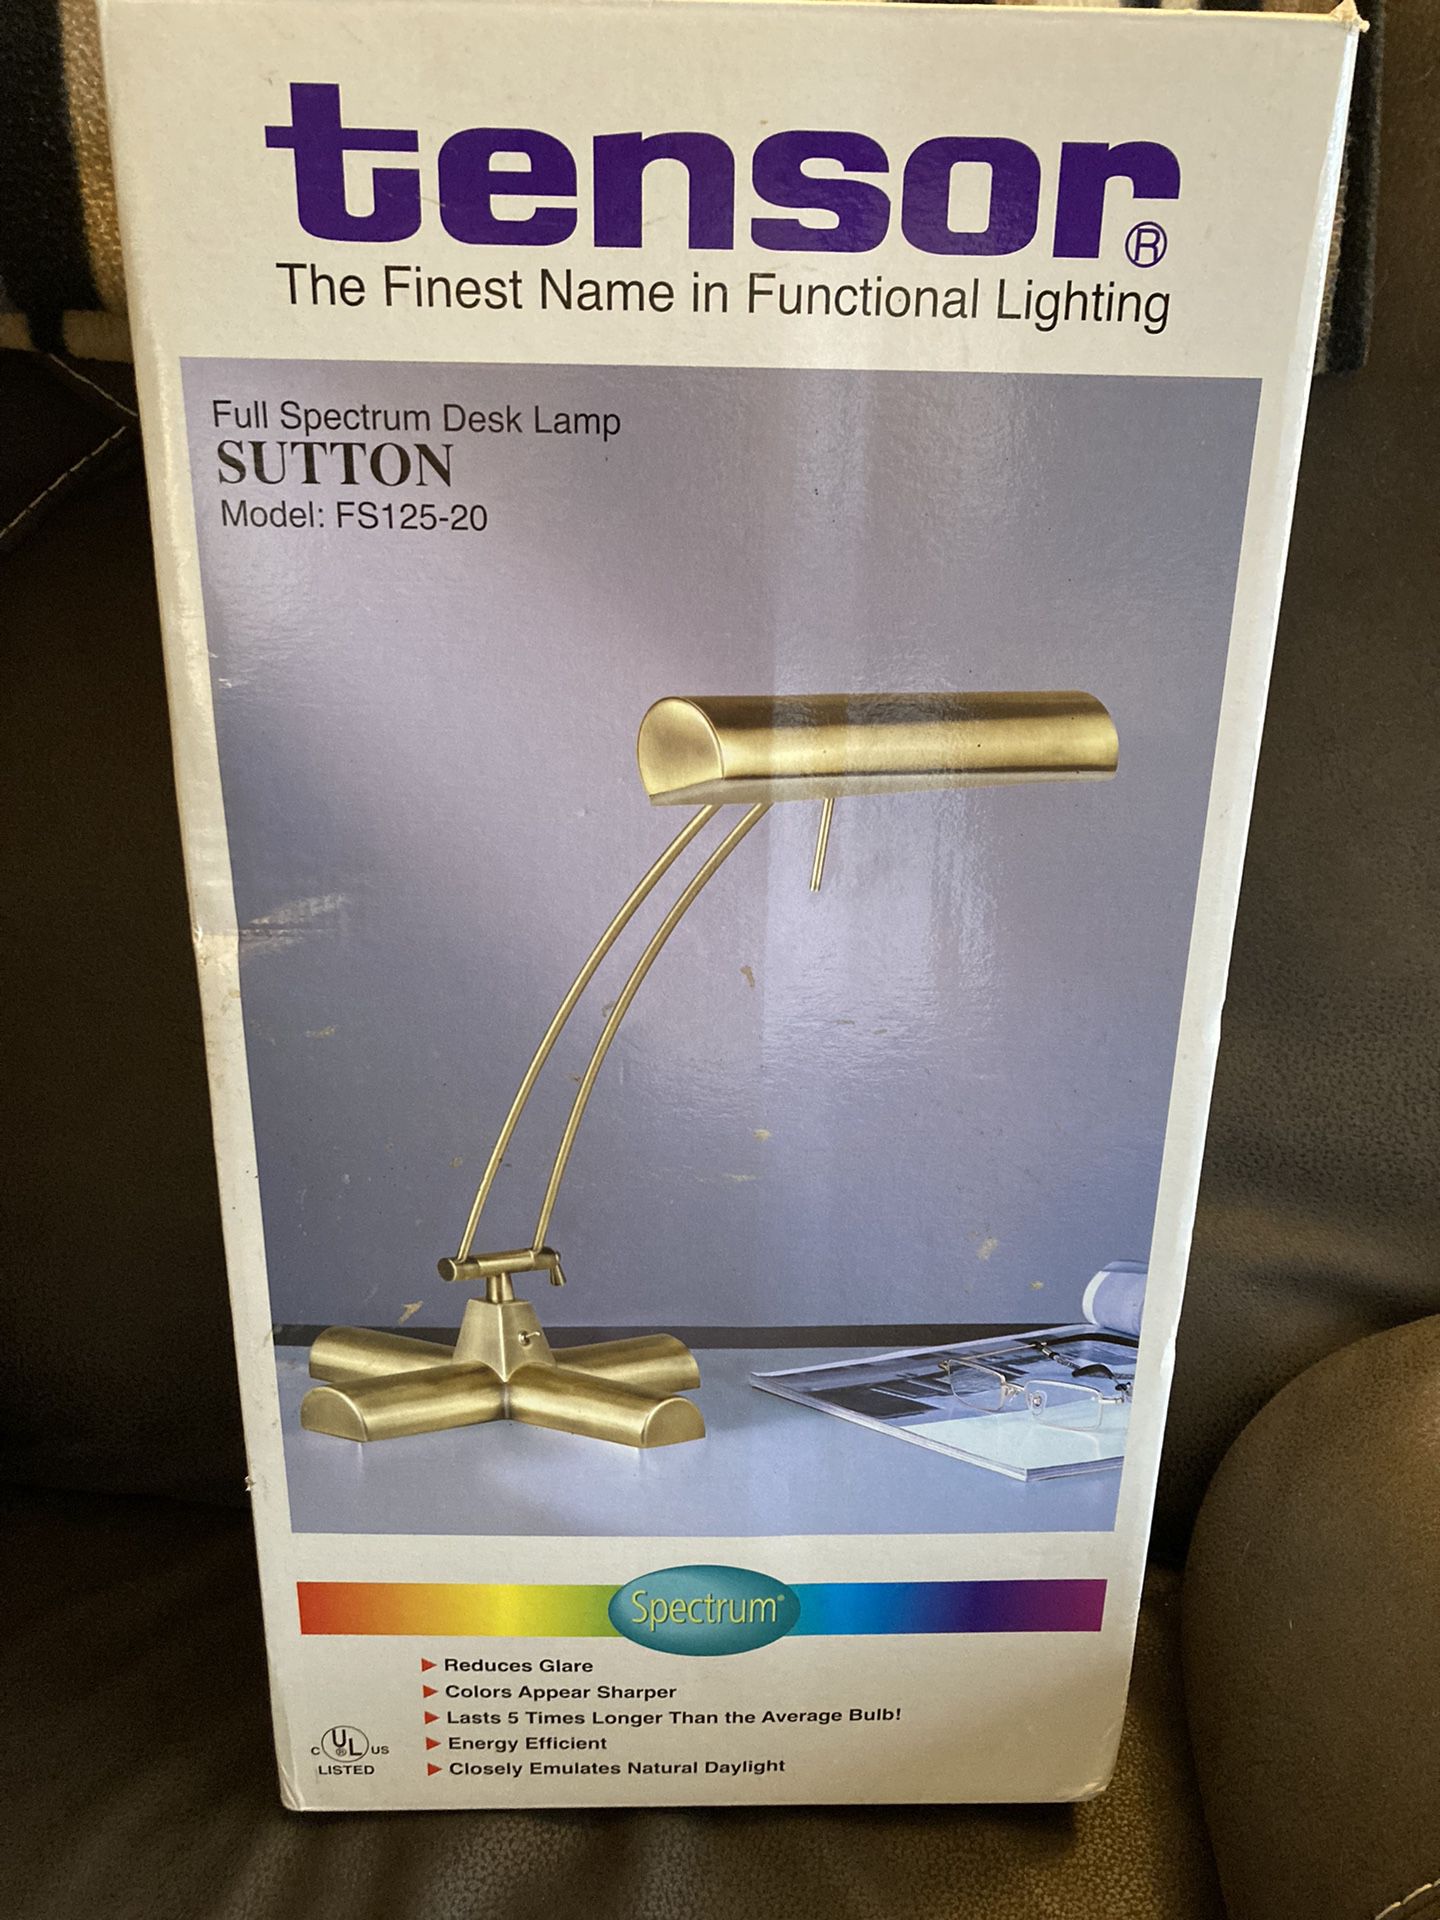 New/old stock Tensor Full Spectrum Desk Lamp Sutton Model FS125-20 - $10 (Withamsville)